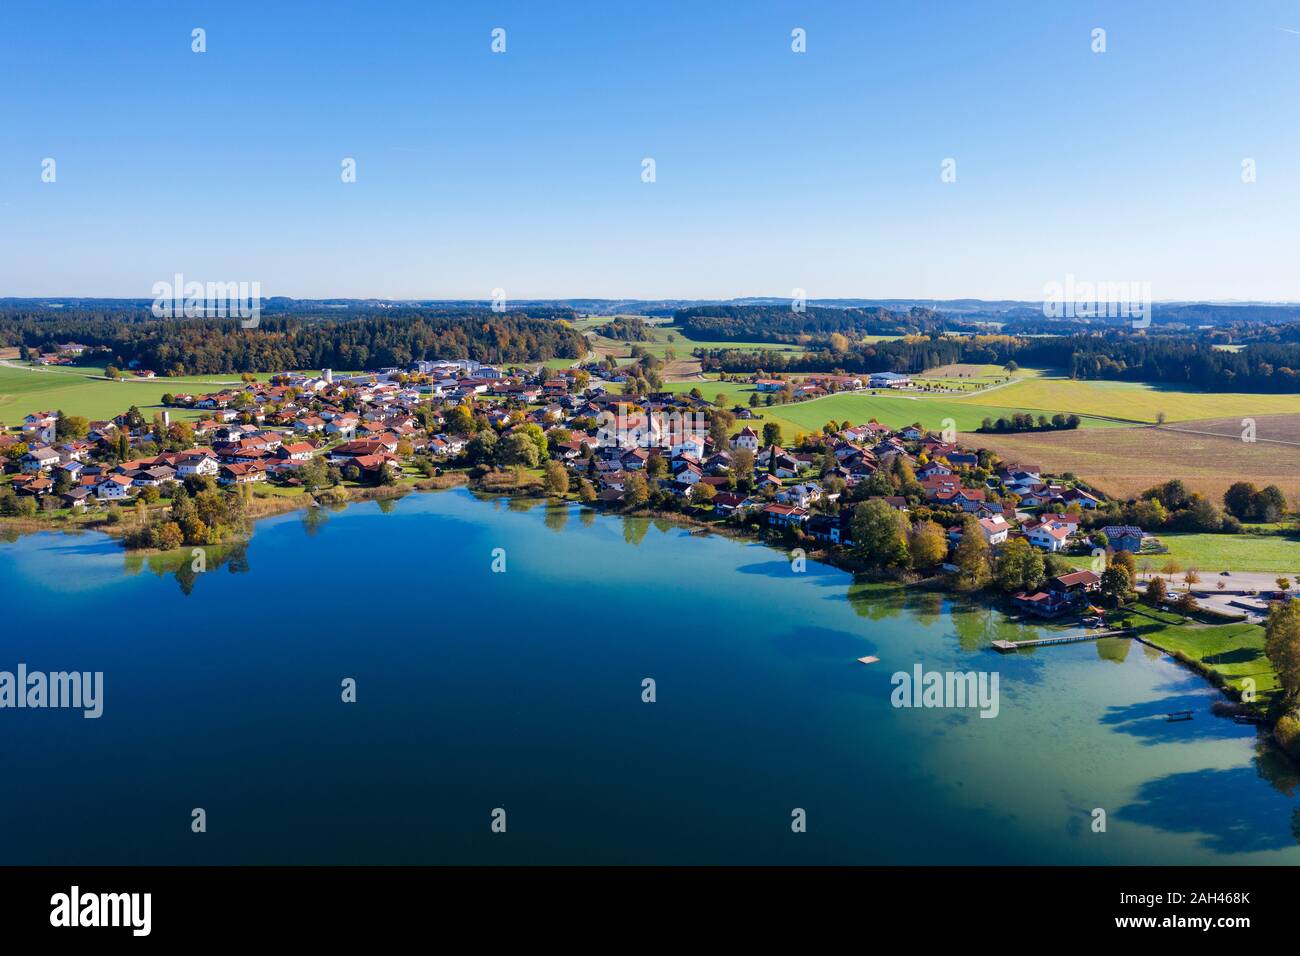 Alemania, Baviera, Seeon-Seebruck, vista aérea de Klostersee y lakeside village Foto de stock